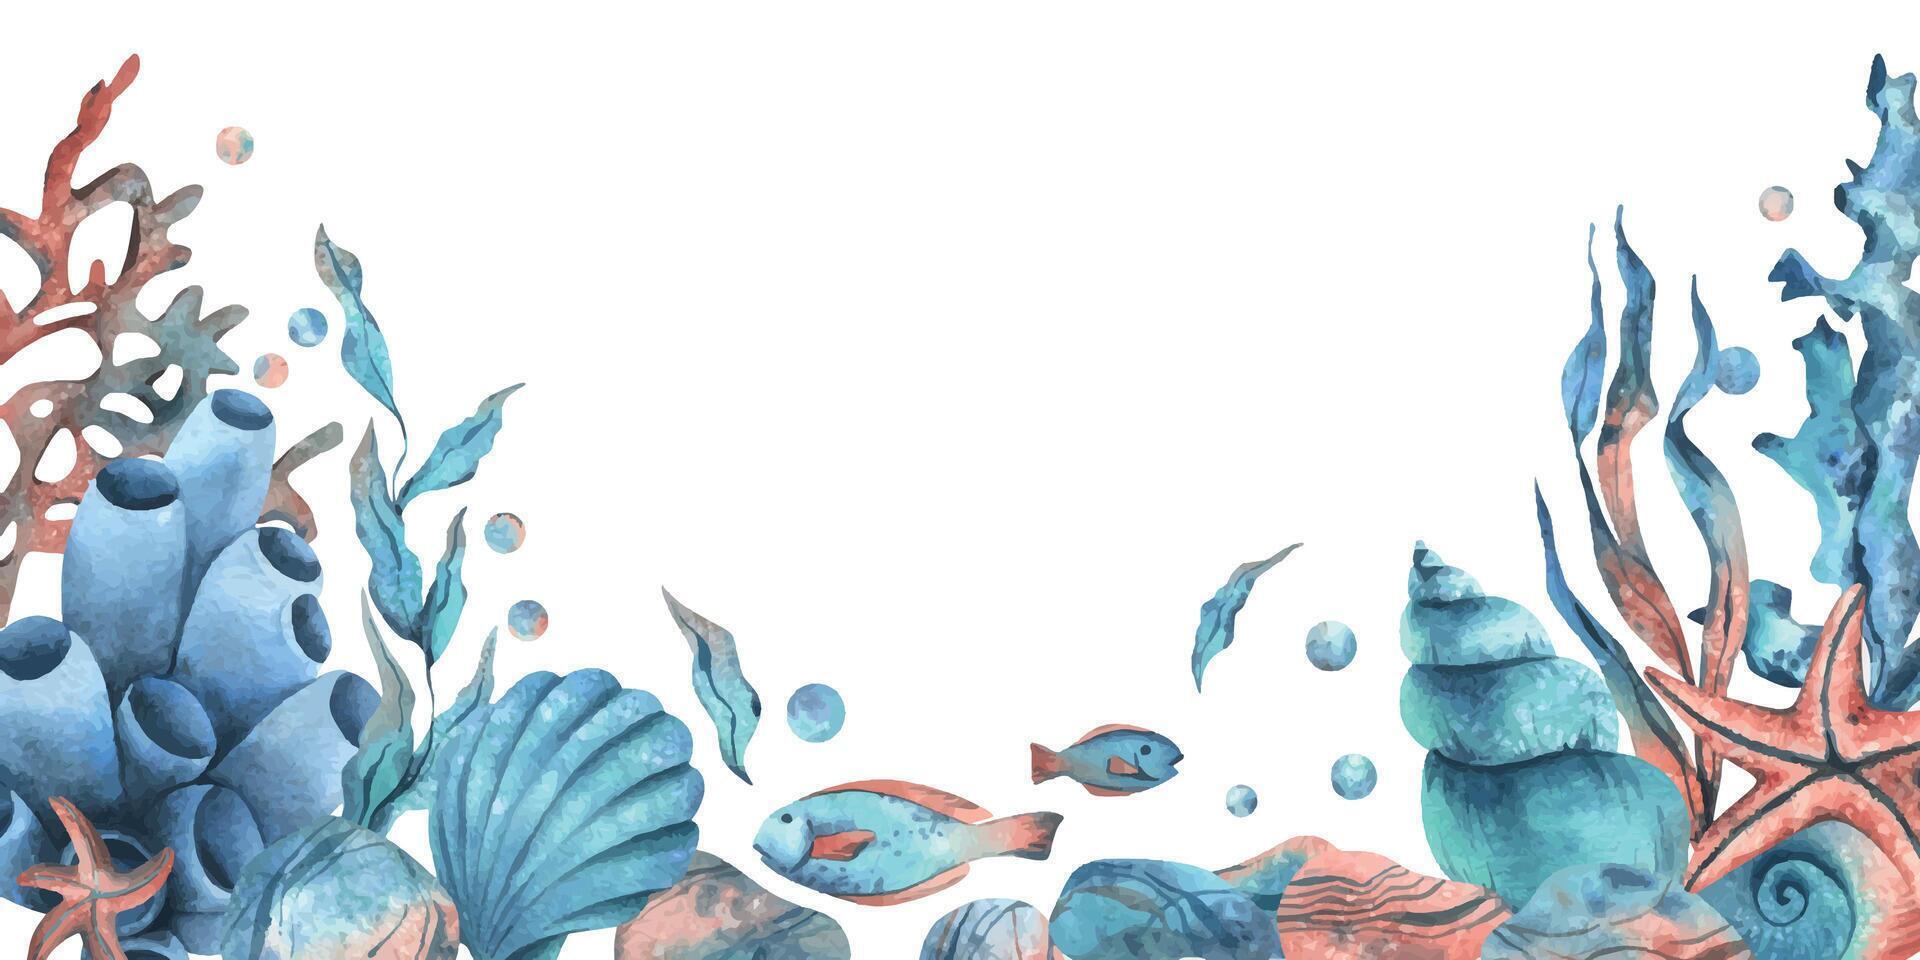 unter Wasser Welt Clip Art mit Meer Tiere Wal, Schildkröte, Krake, Seepferdchen, Seestern, Muscheln, Koralle und Algen. Hand gezeichnet Aquarell Illustration. Grenze, Vorlage, Rahmen isoliert von das Hintergrund. vektor